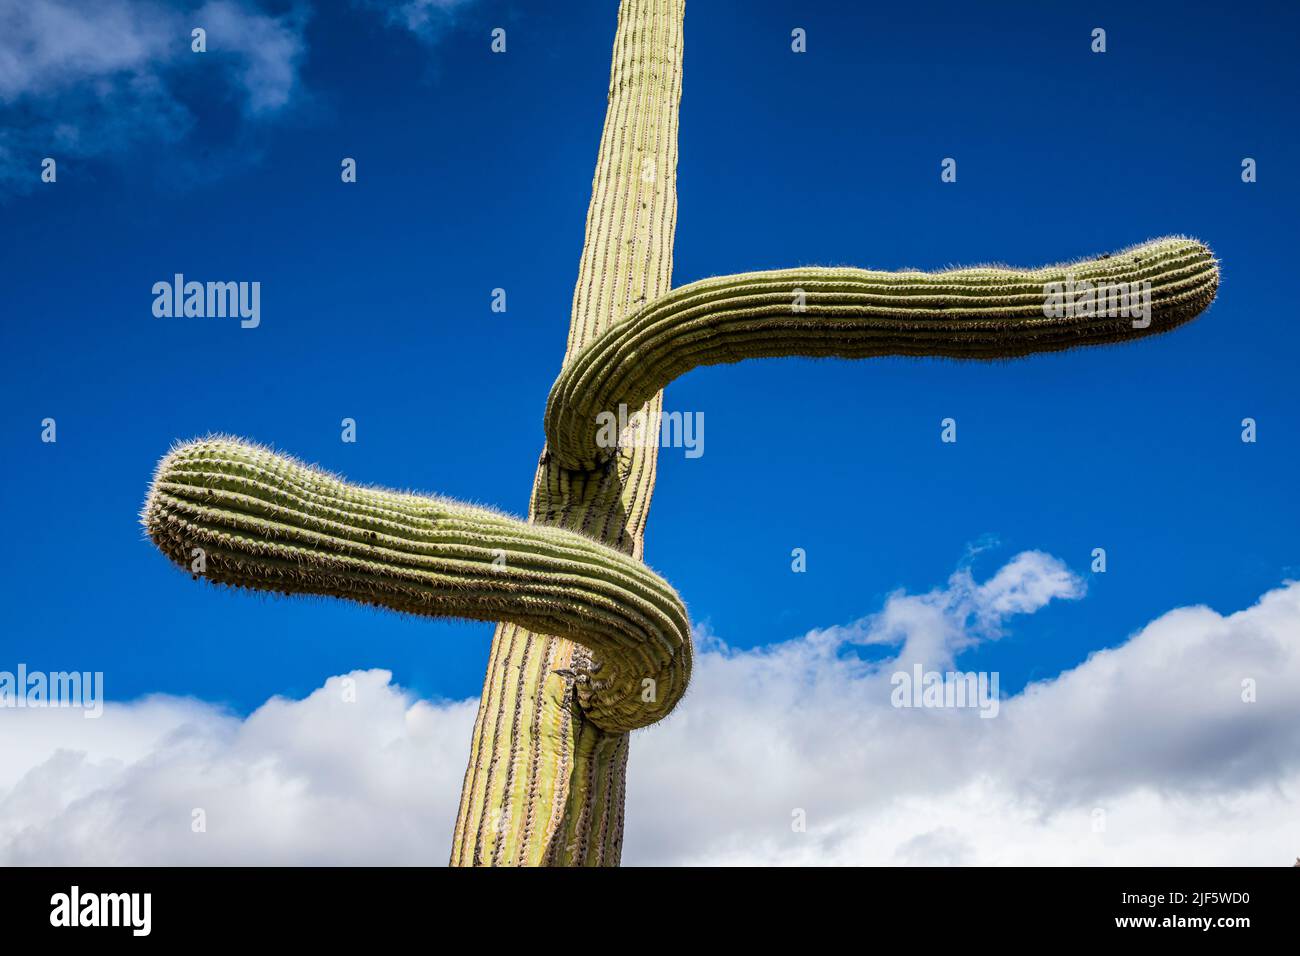 Un cactus Saguaro con los brazos yendo en direcciones extrañas opuestas, Área Recreativa Sabino Canyon, Arizona. Foto de stock